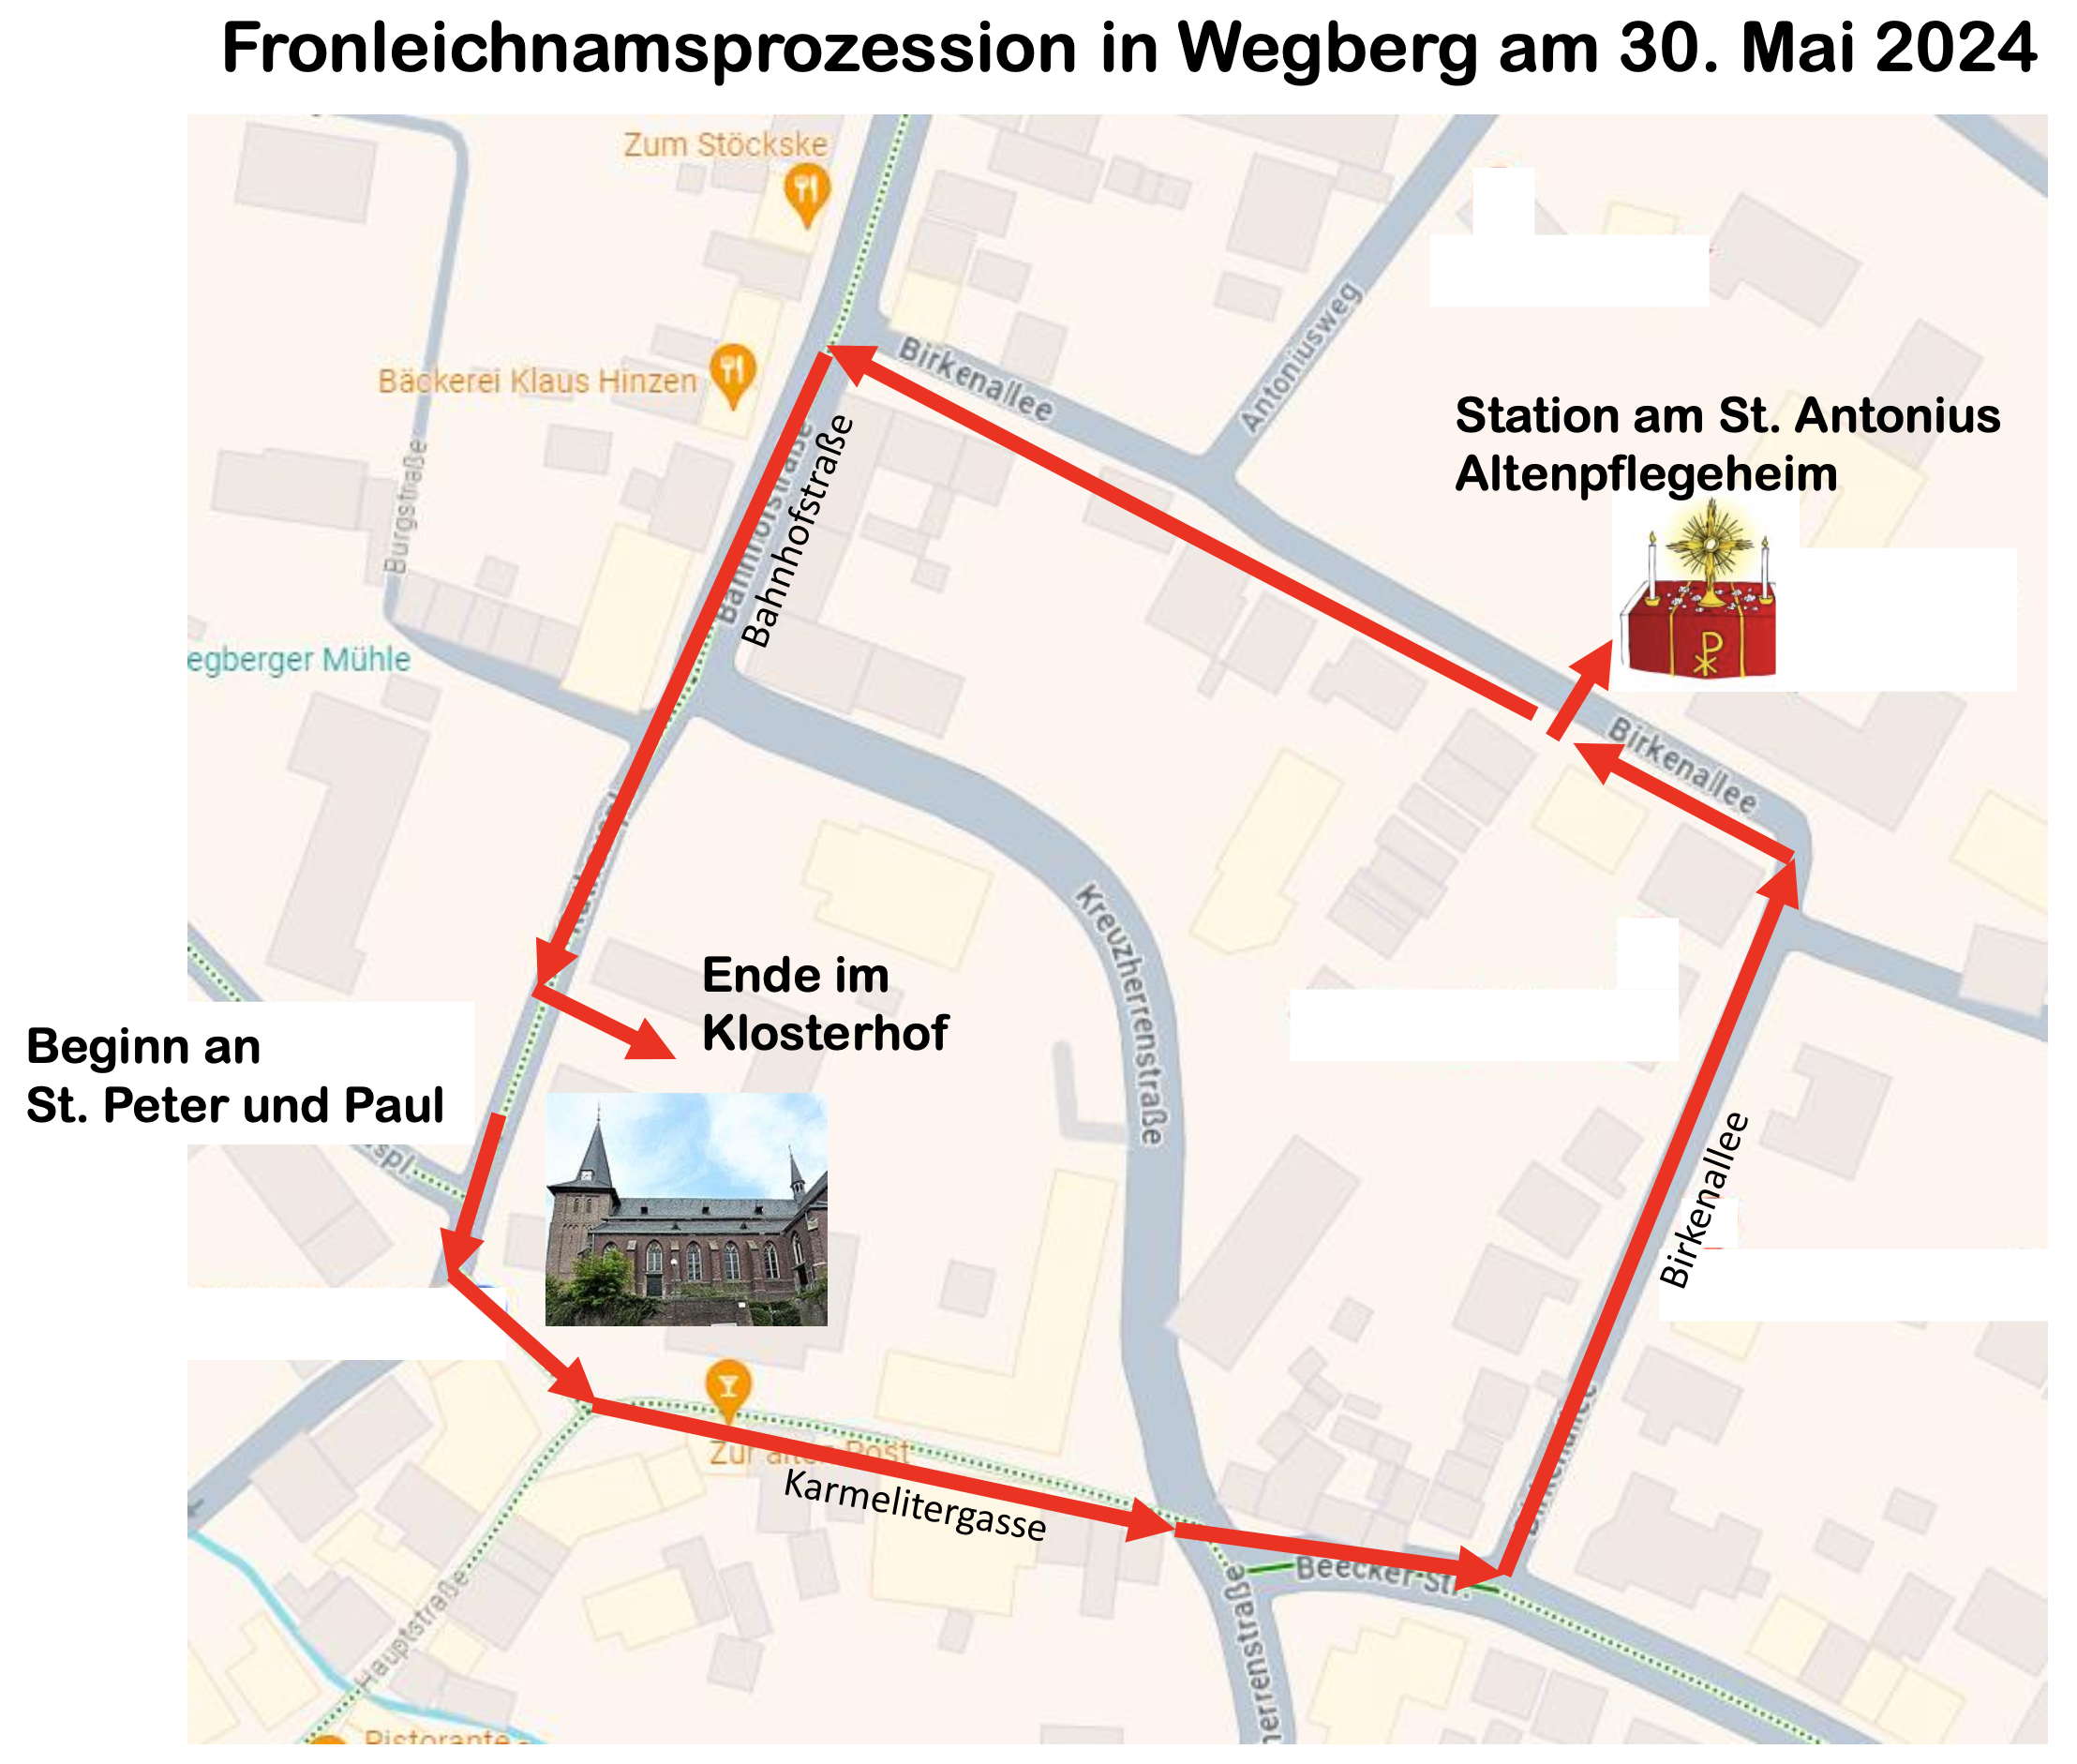 Neuer Prozessionsweg der Fronleichnamsprozession in Wegberg